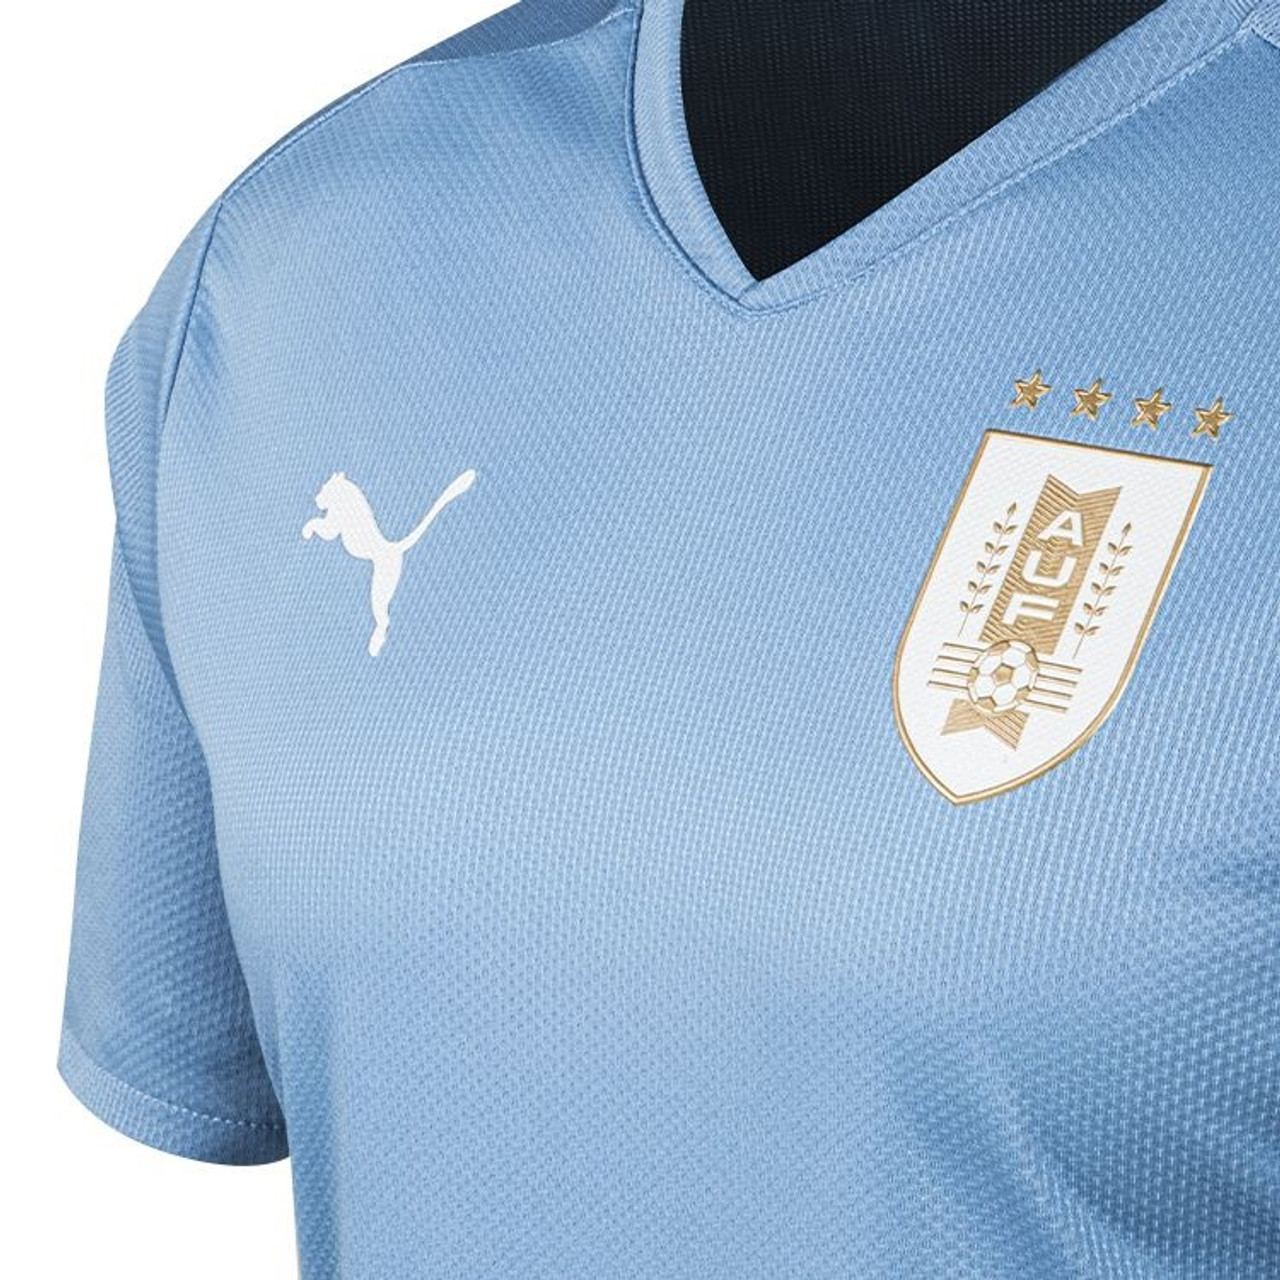 Men's Shirt Selección Uruguaya Camiseta Celeste Remera Titular Official Team Shirt by Puma - 2021